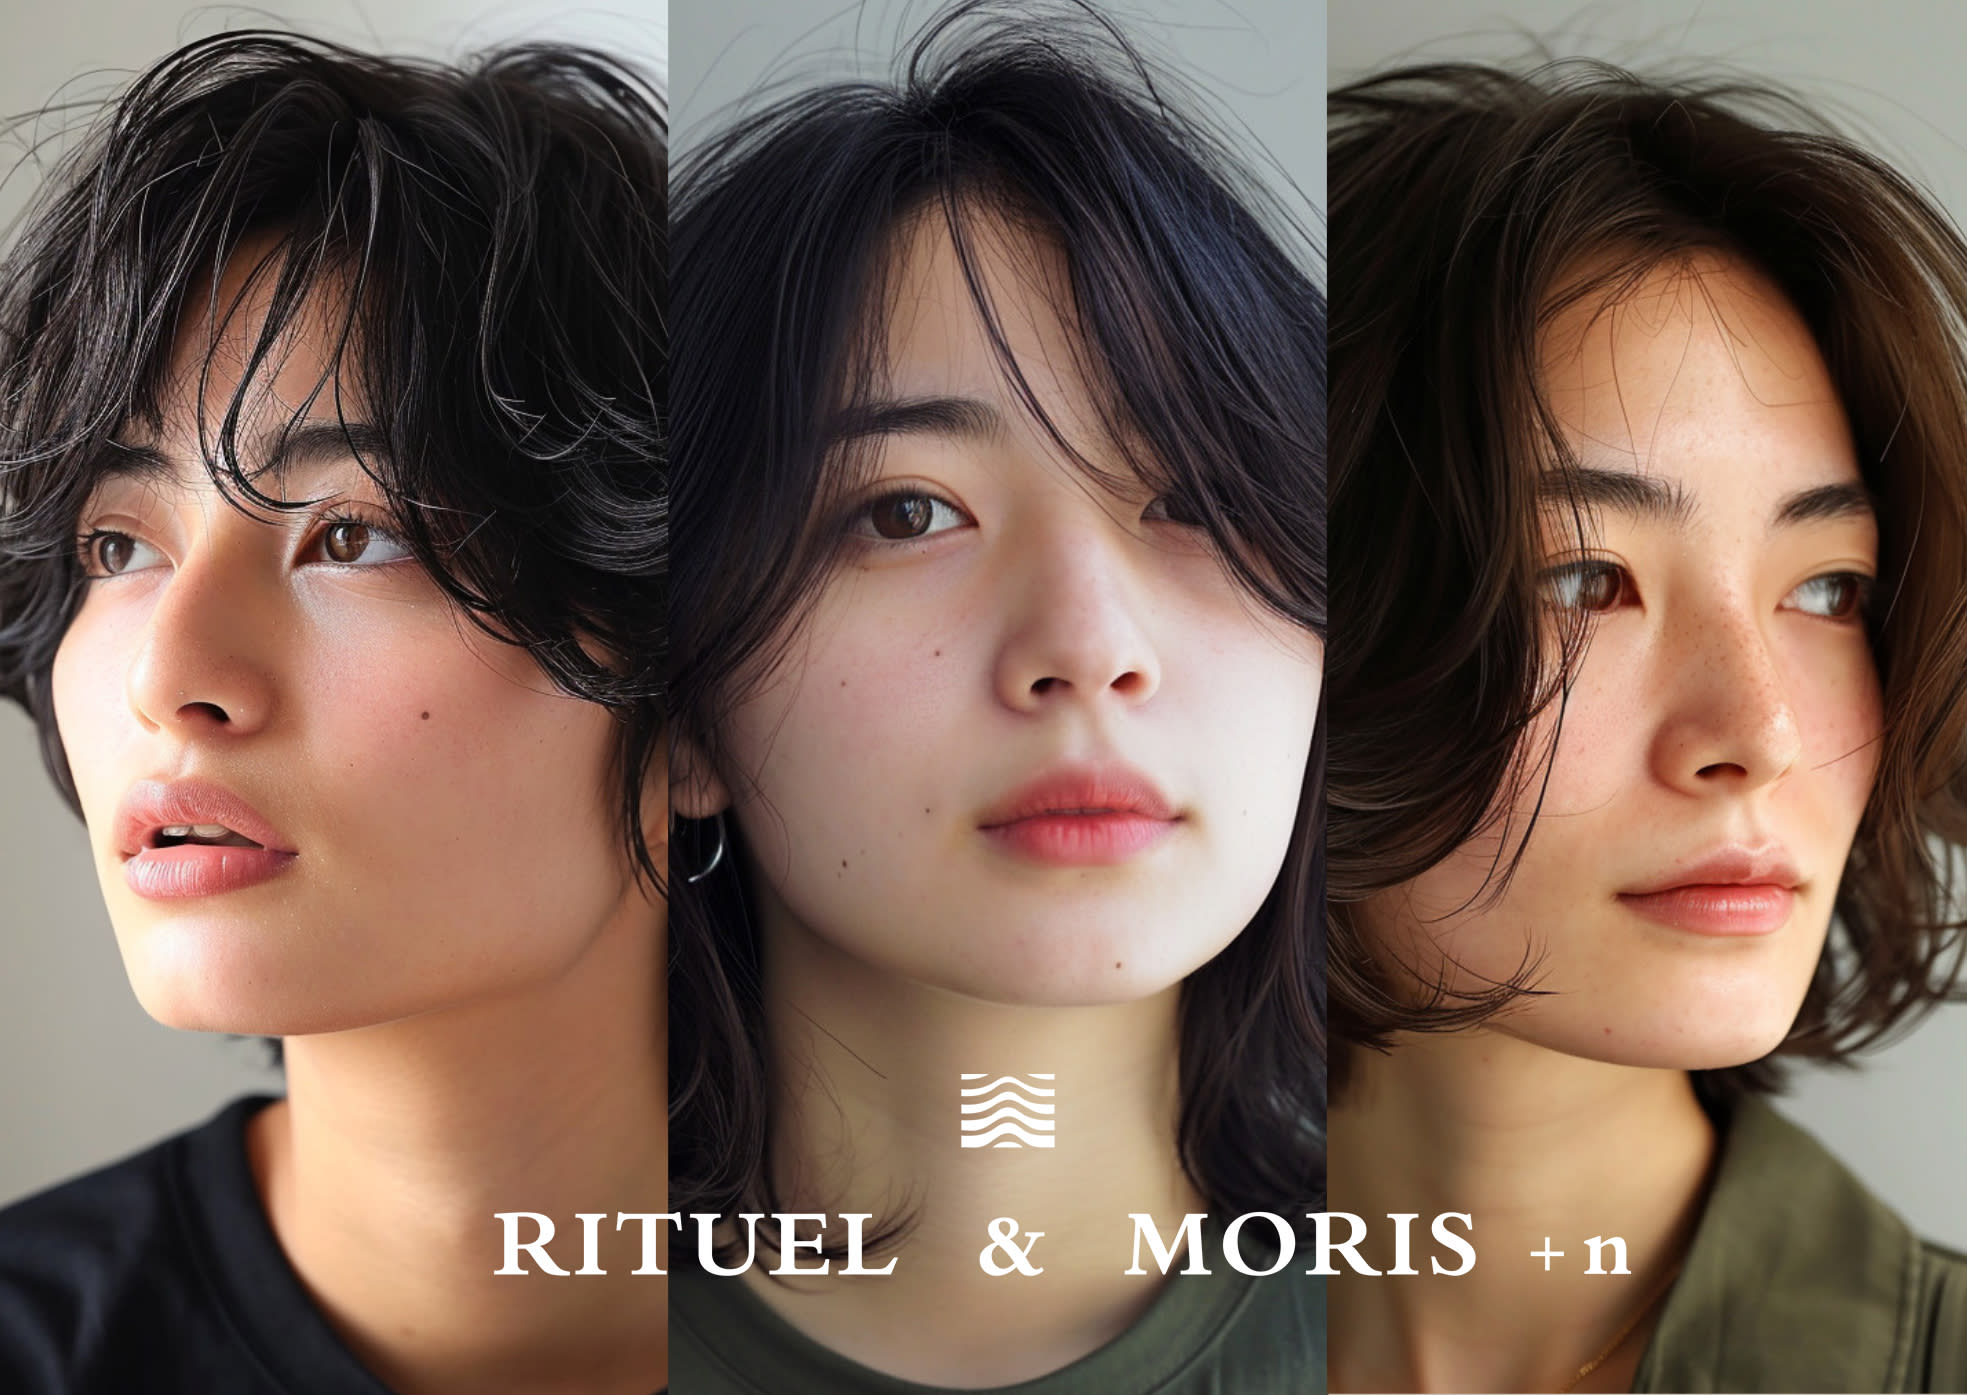 RITUEL&MORIS+nのアイキャッチ画像